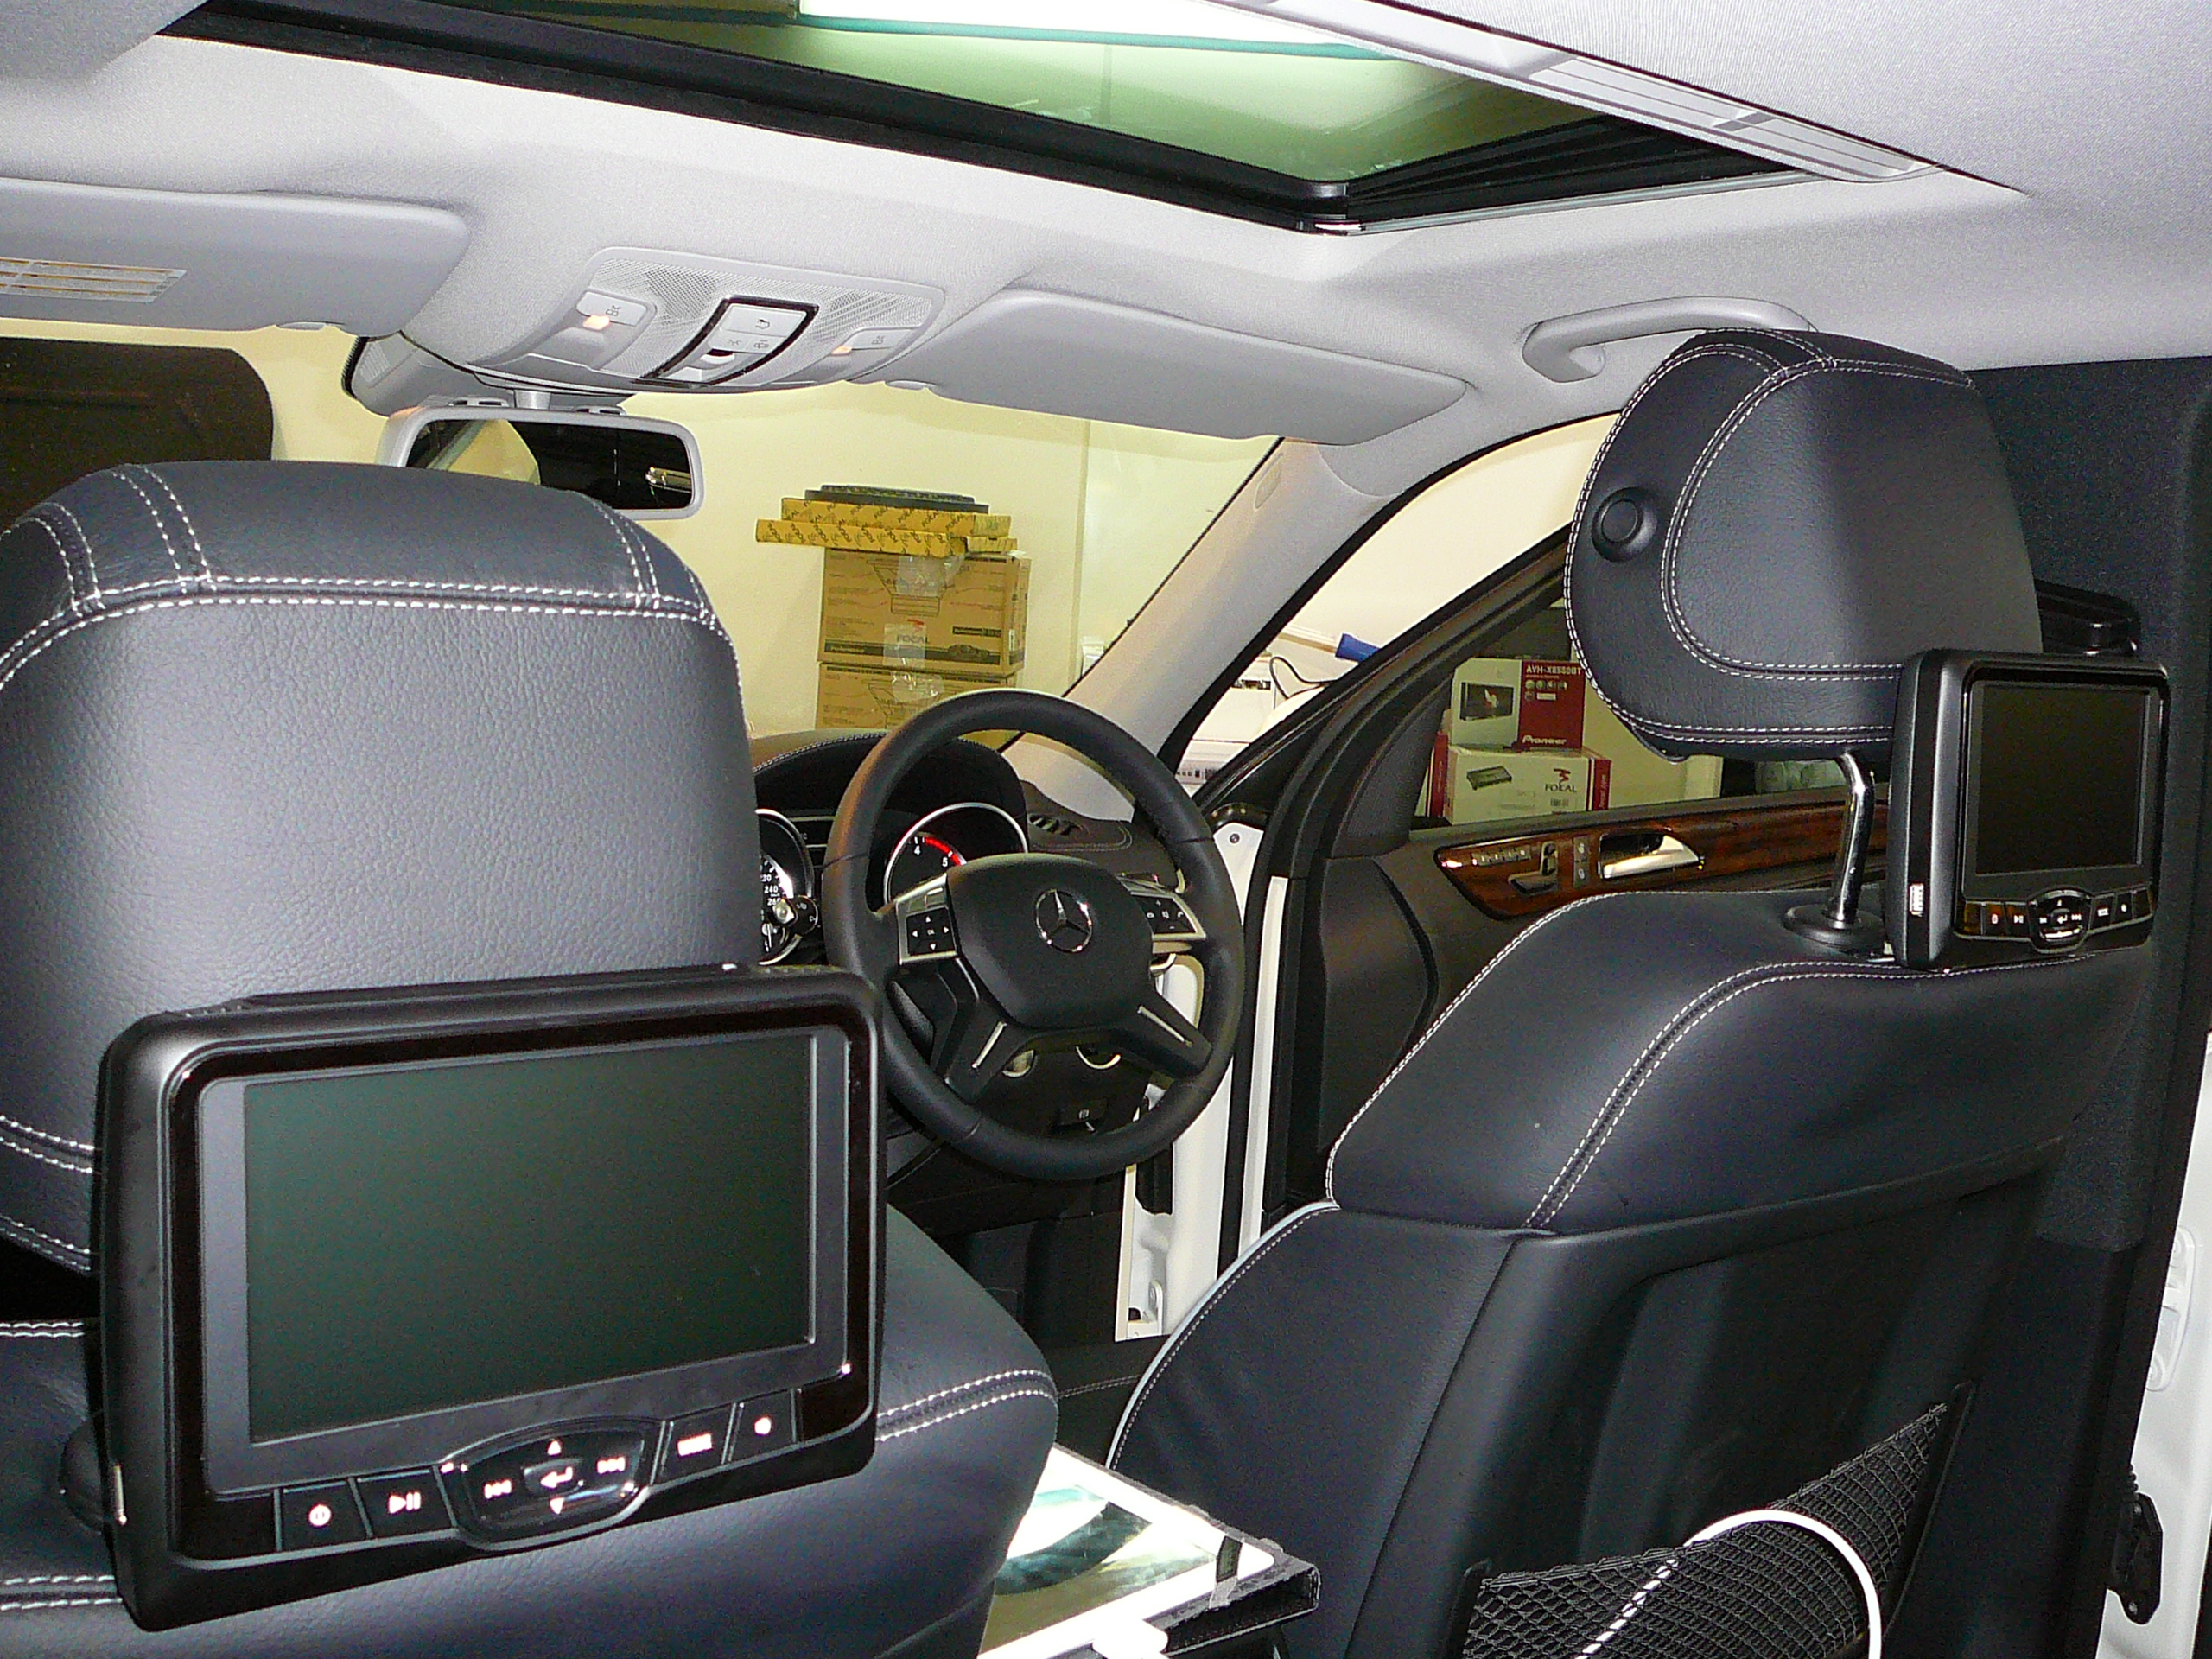 Mercedes Benz ML 2013, Rosen DVD Head Rest Screens with Ipad input